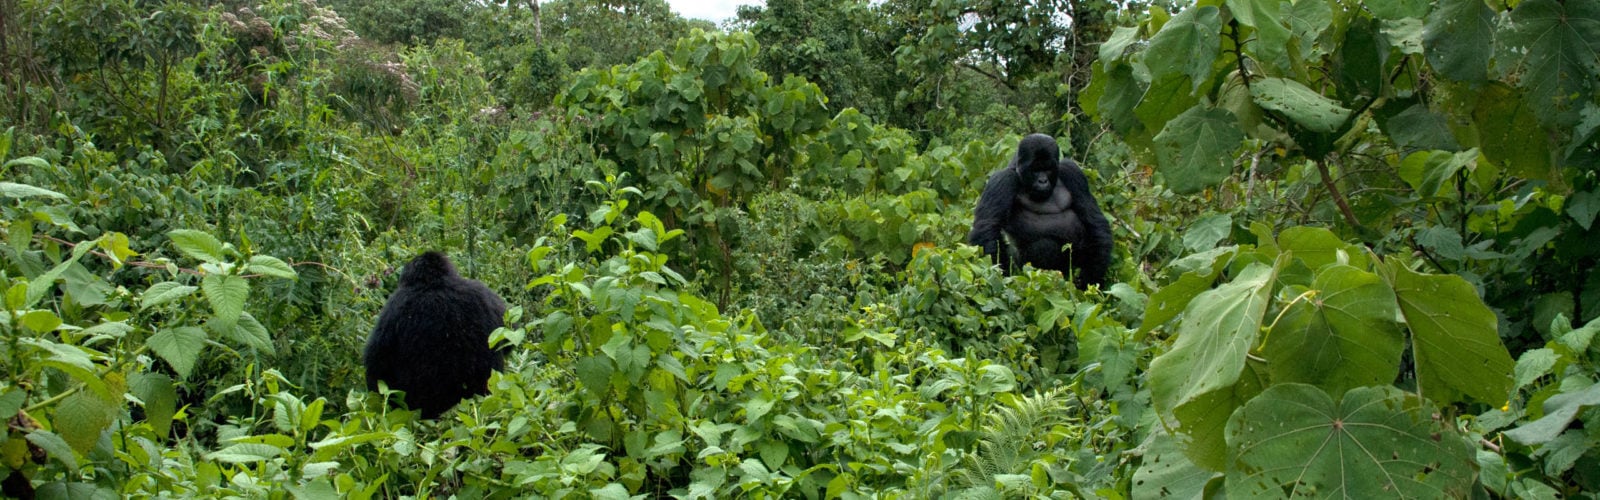 A kwitonda and a female gorilla in the Rwandan bush